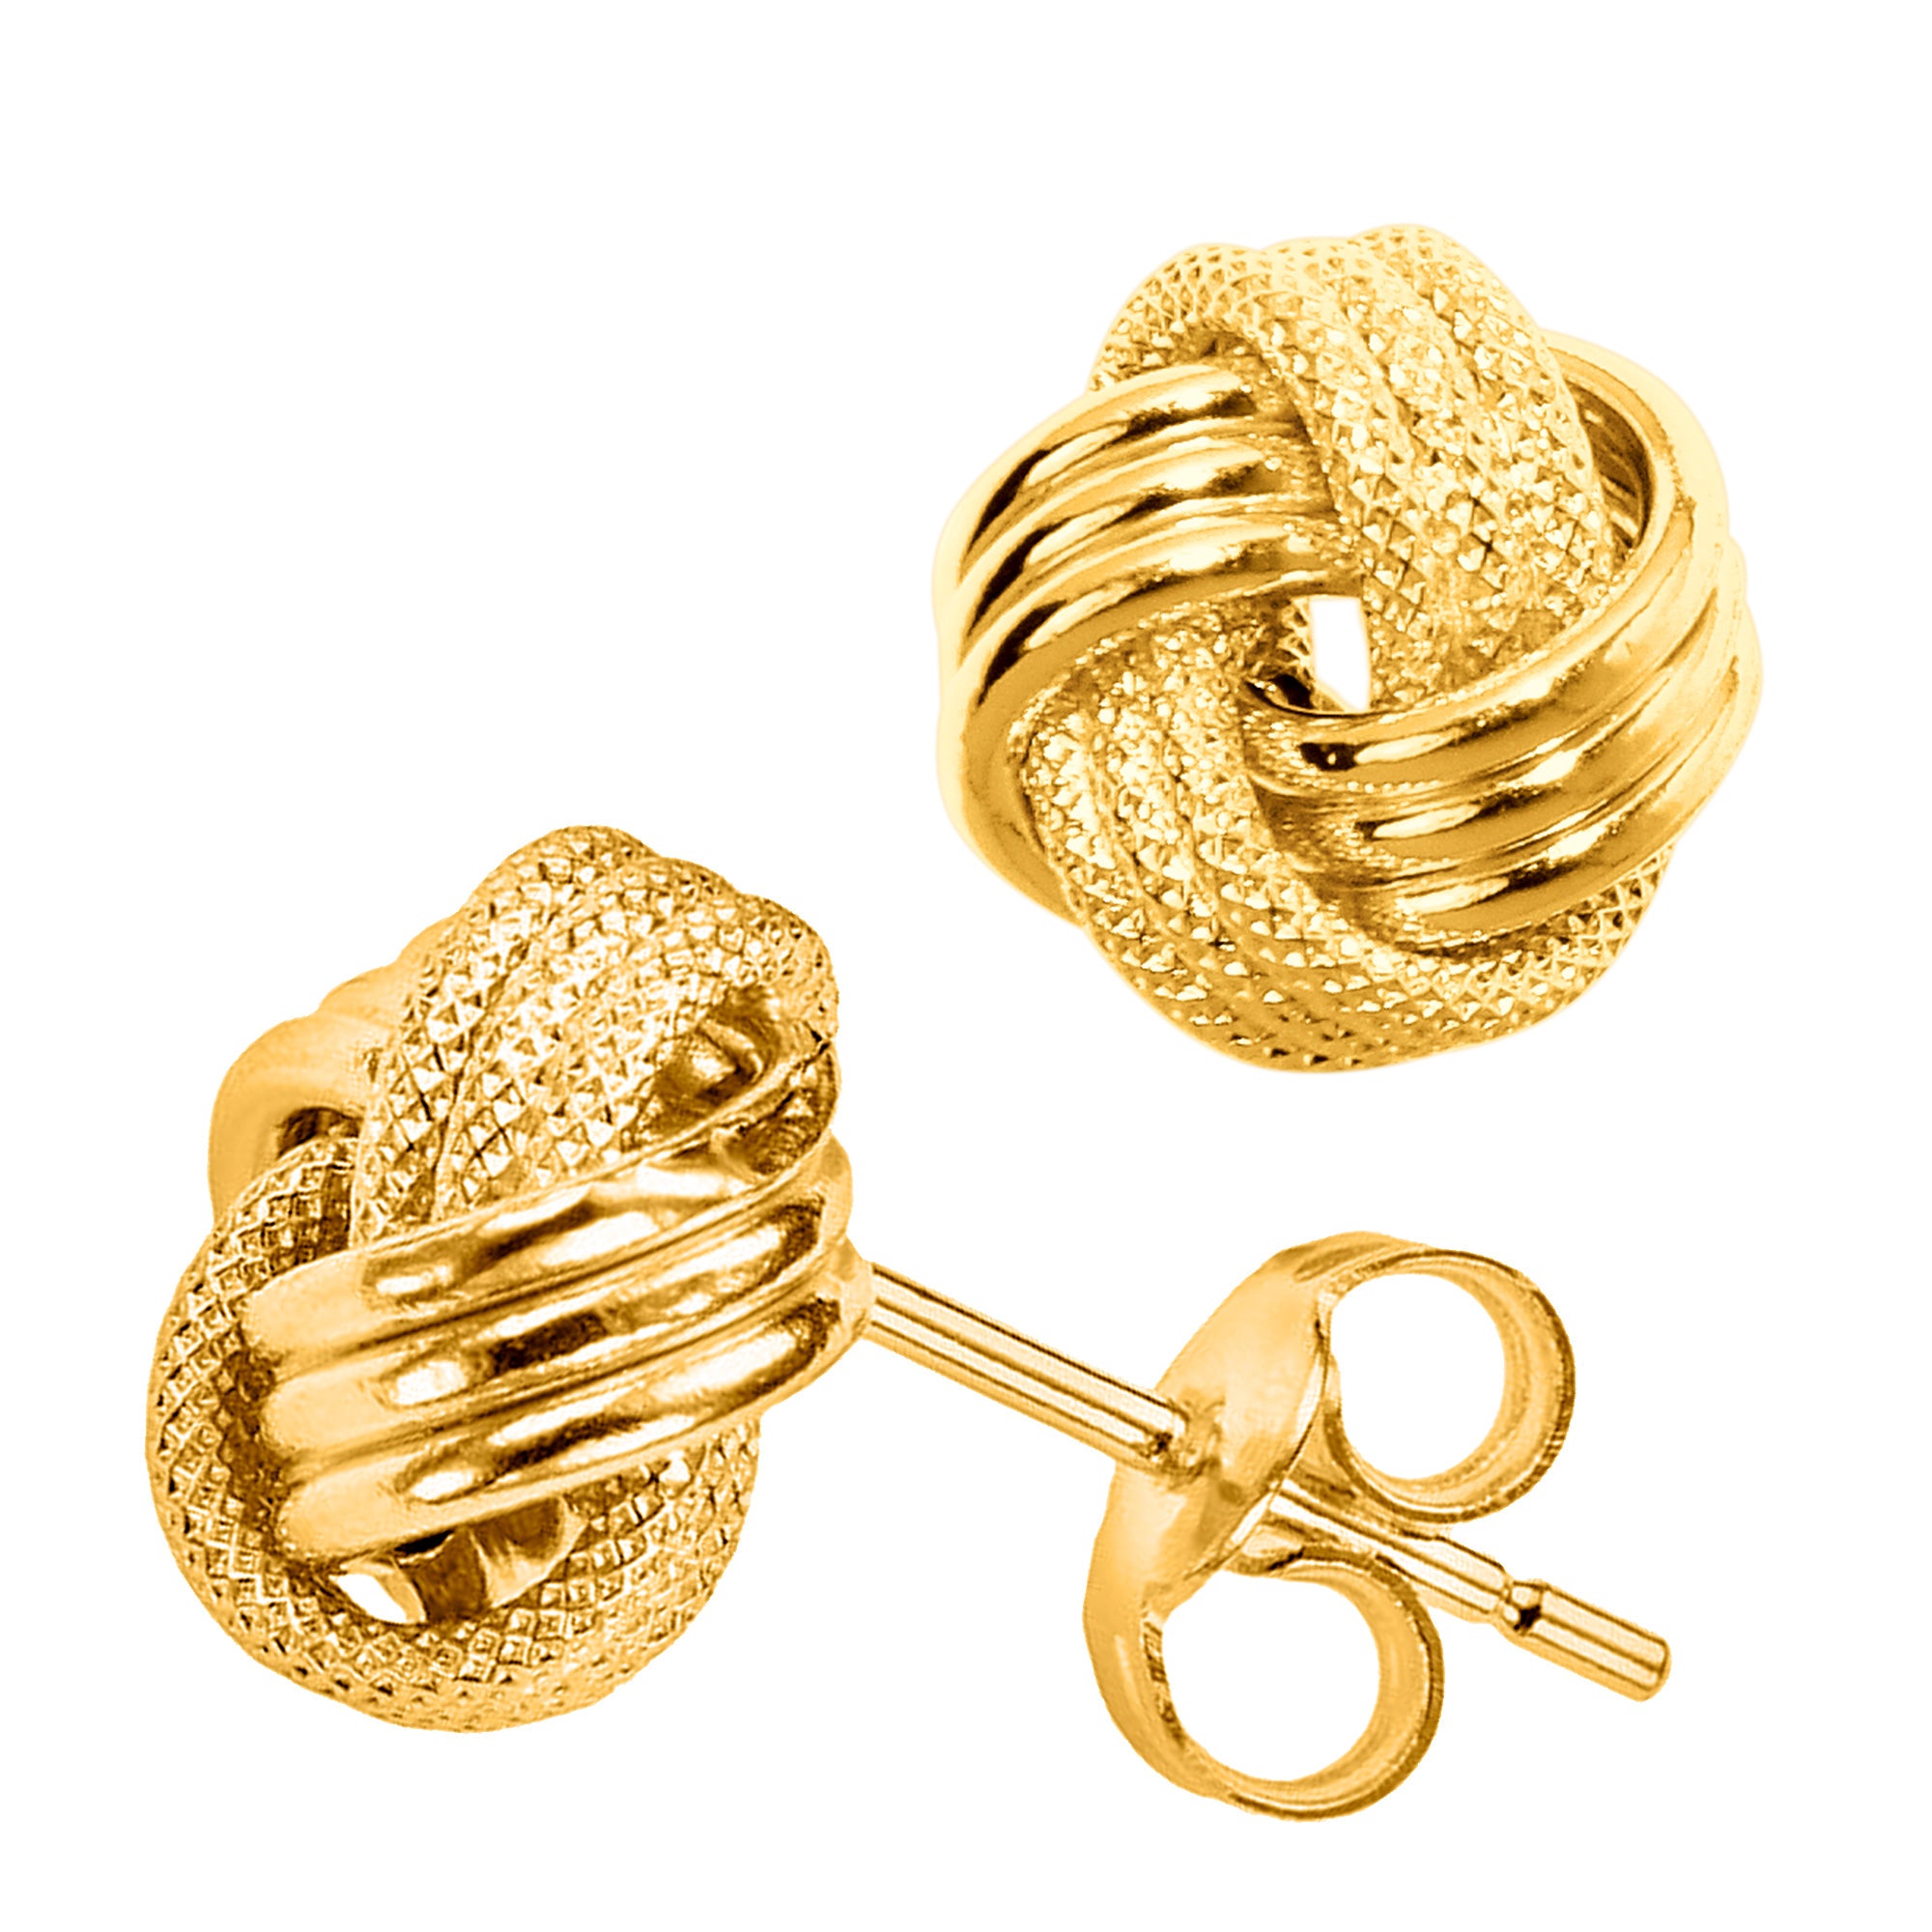 14 karat guld glänsande och texturerat trippelrad kärleksknut örhängen, 10 mm fina designersmycken för män och kvinnor